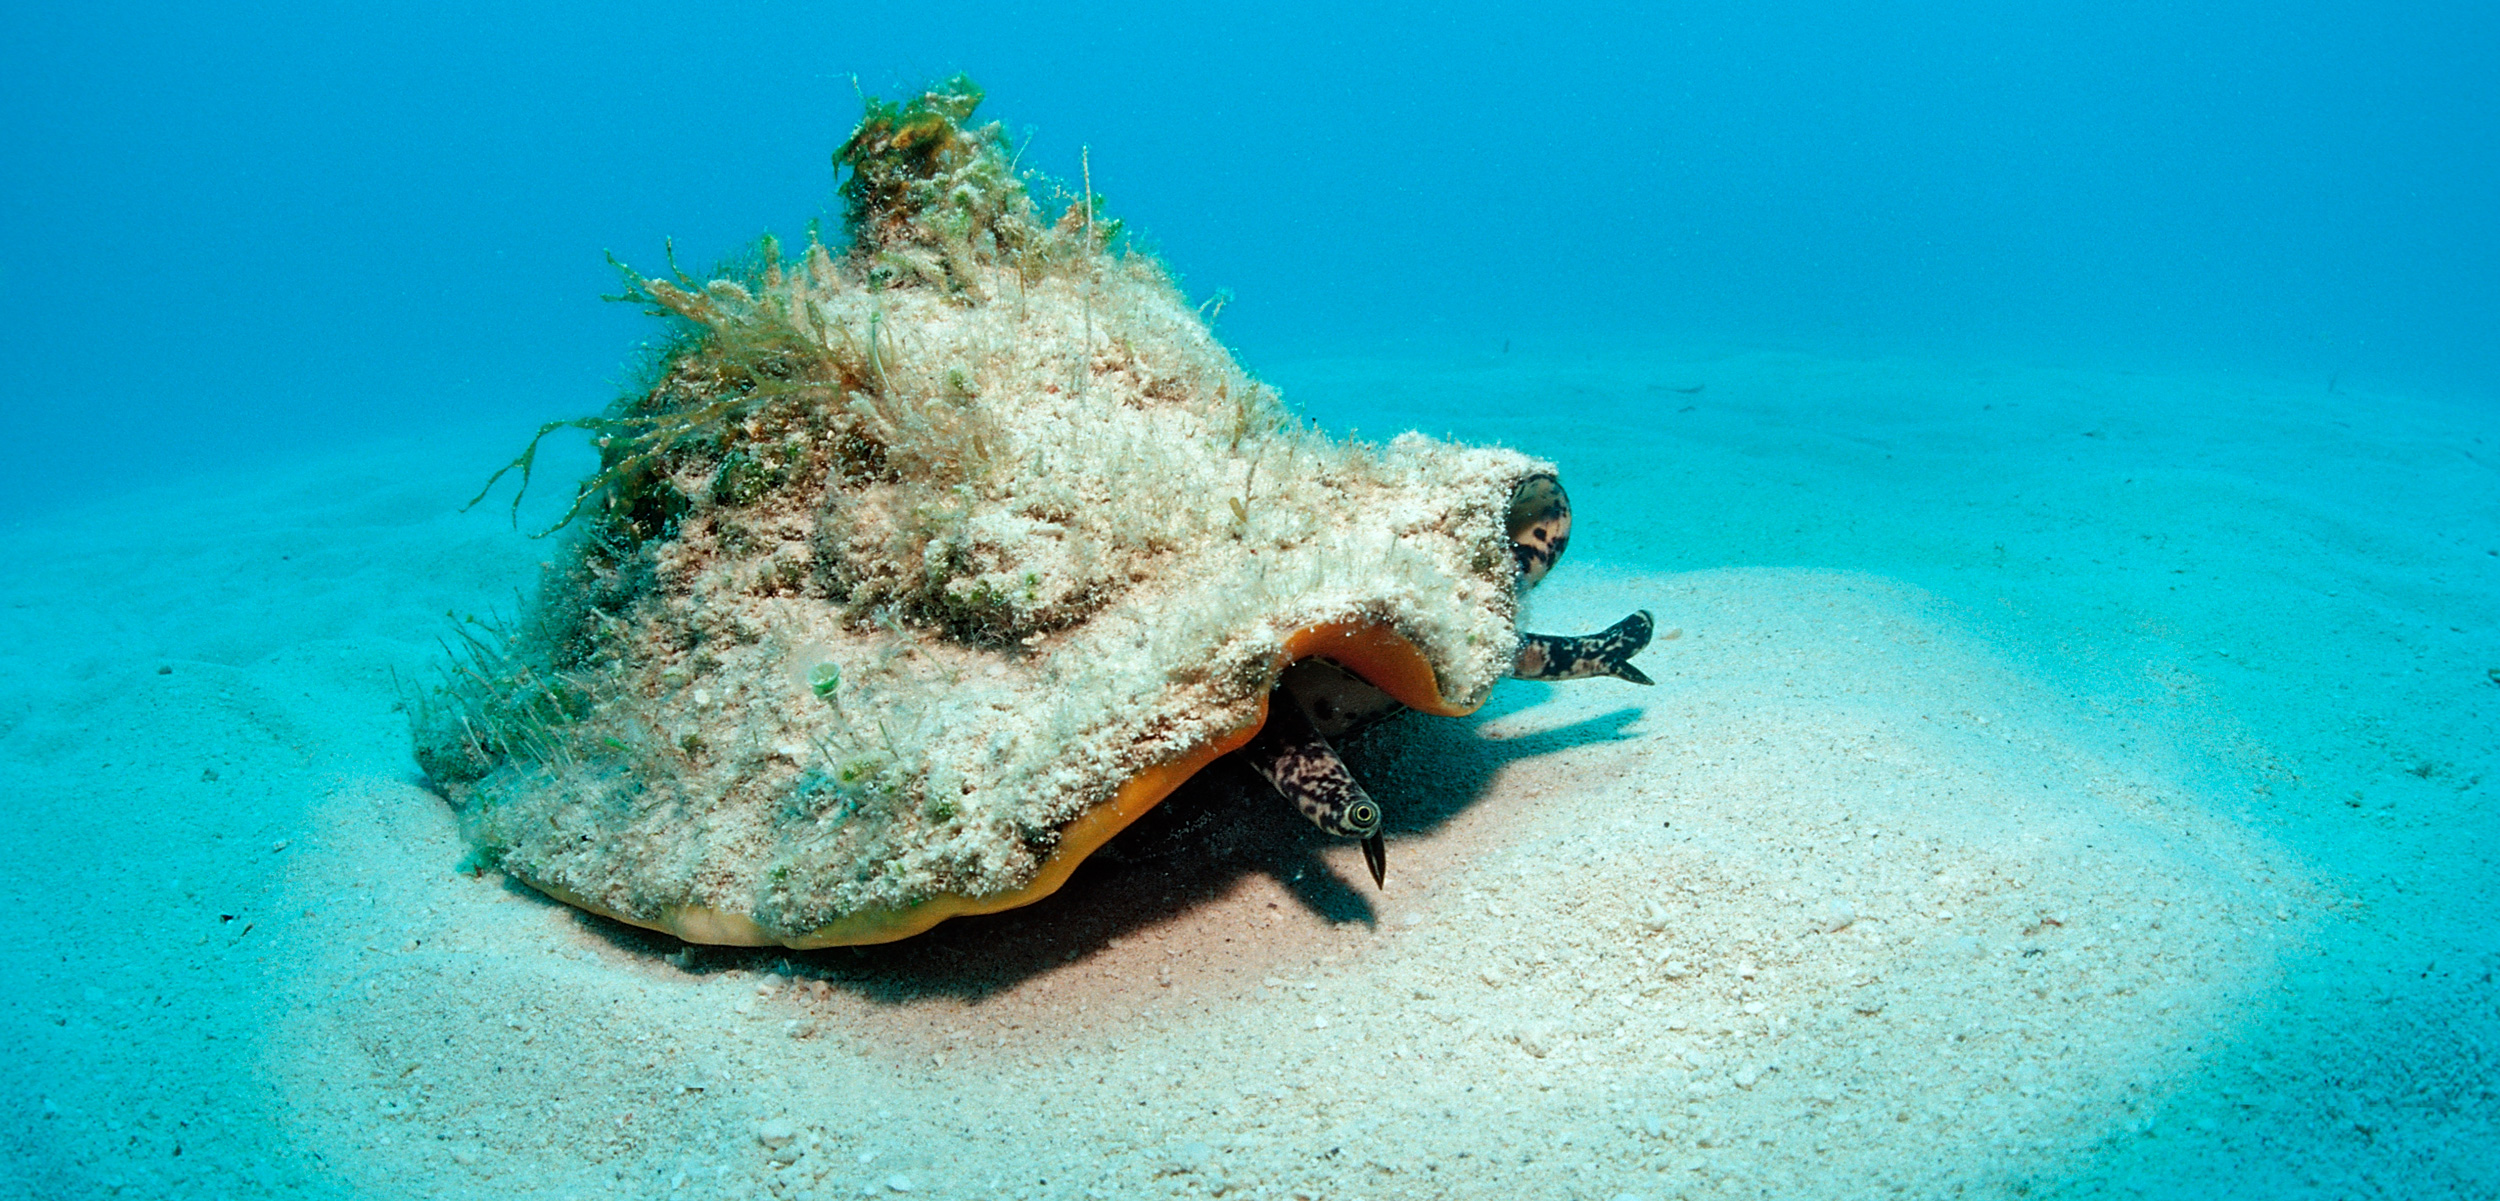 queen conch on the ocean floor